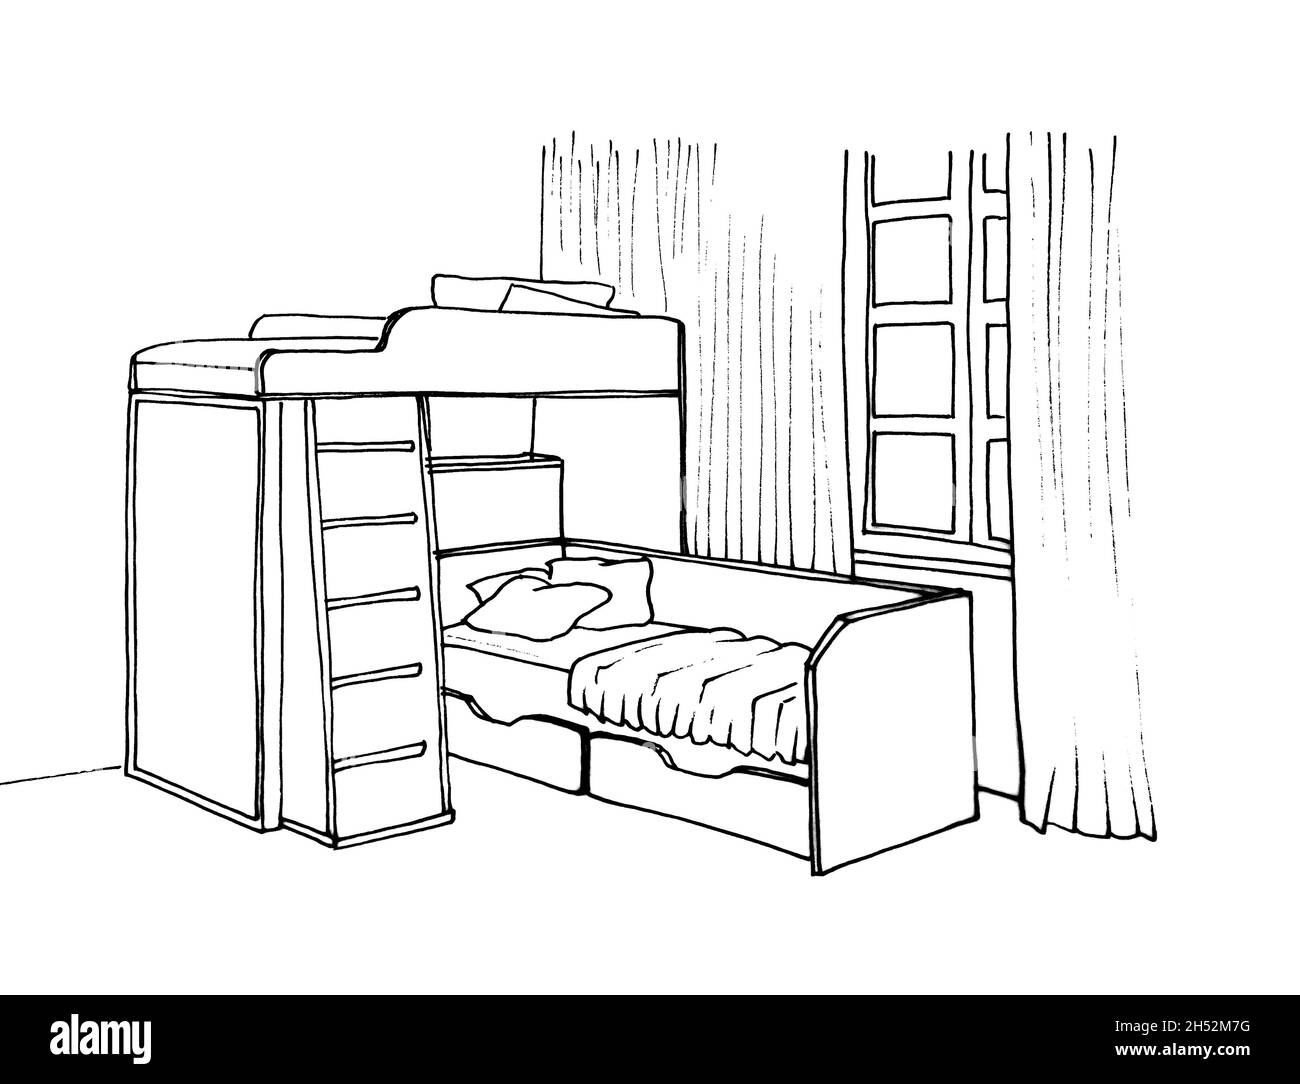 Disegno grafico di una camera interna per bambini letto a castello con scale, finestra Foto Stock